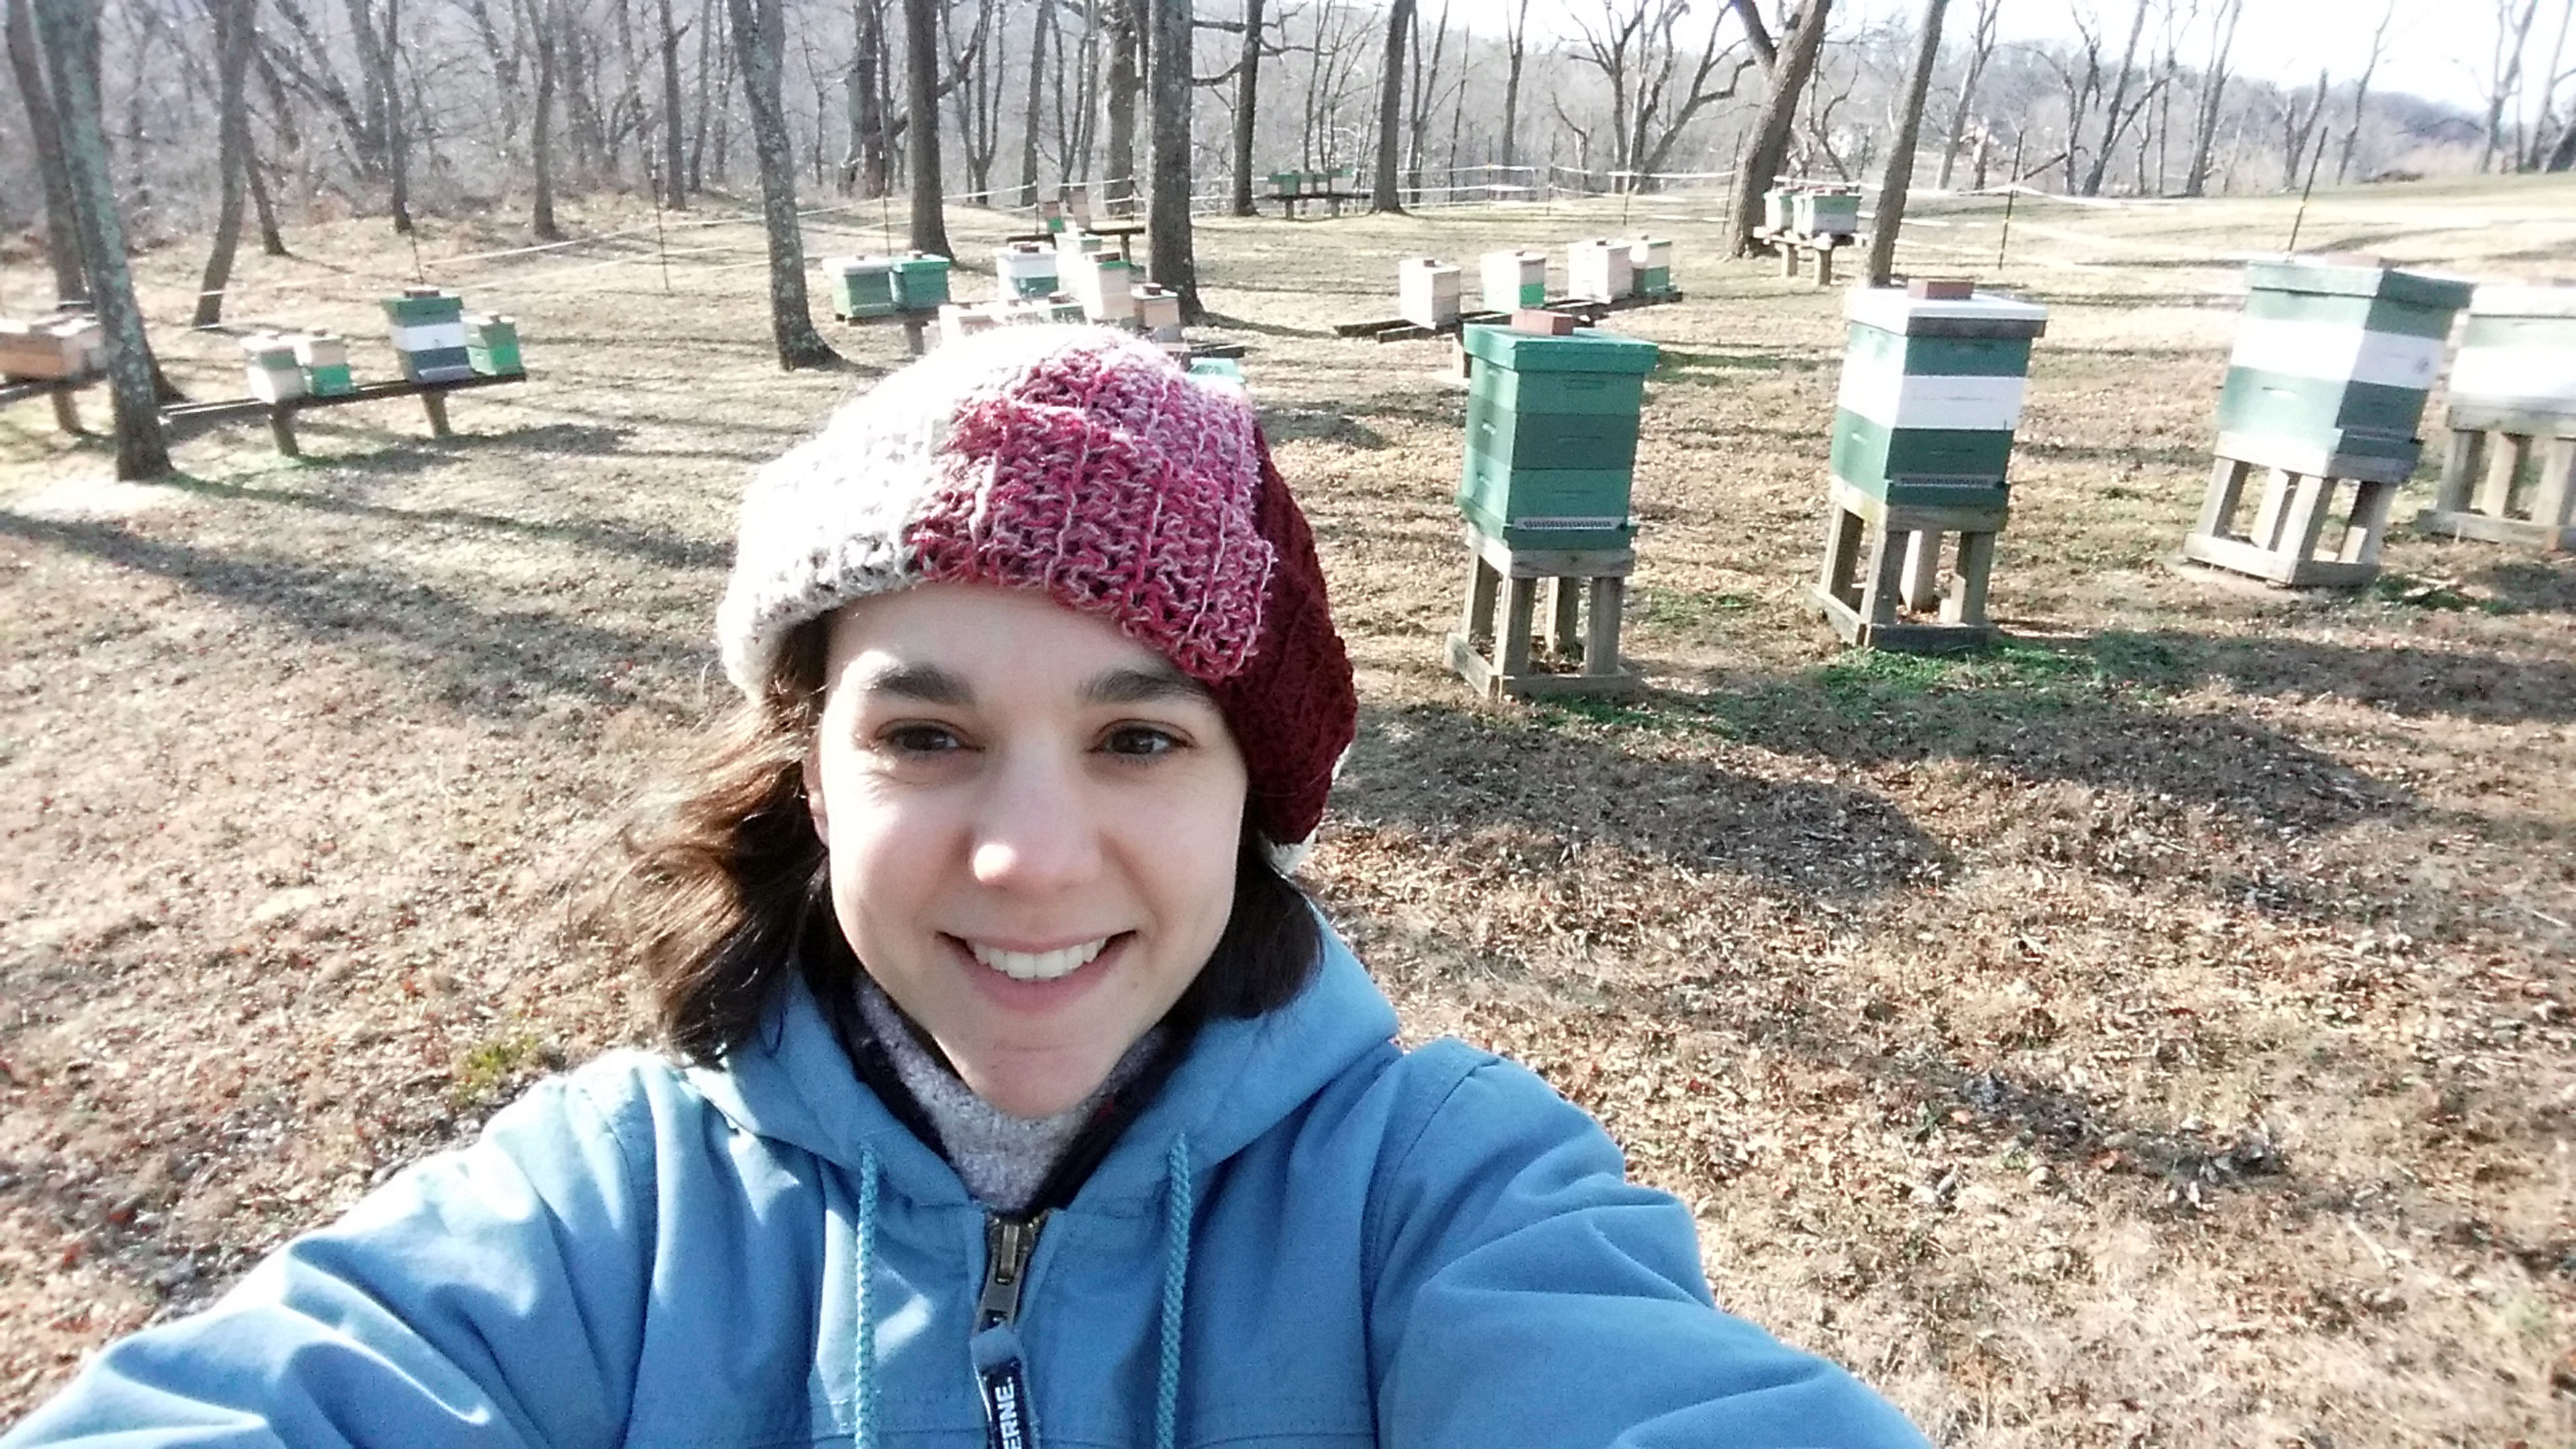 Eine Frau macht ein Selfie vor Bienenstöcken im Wald.